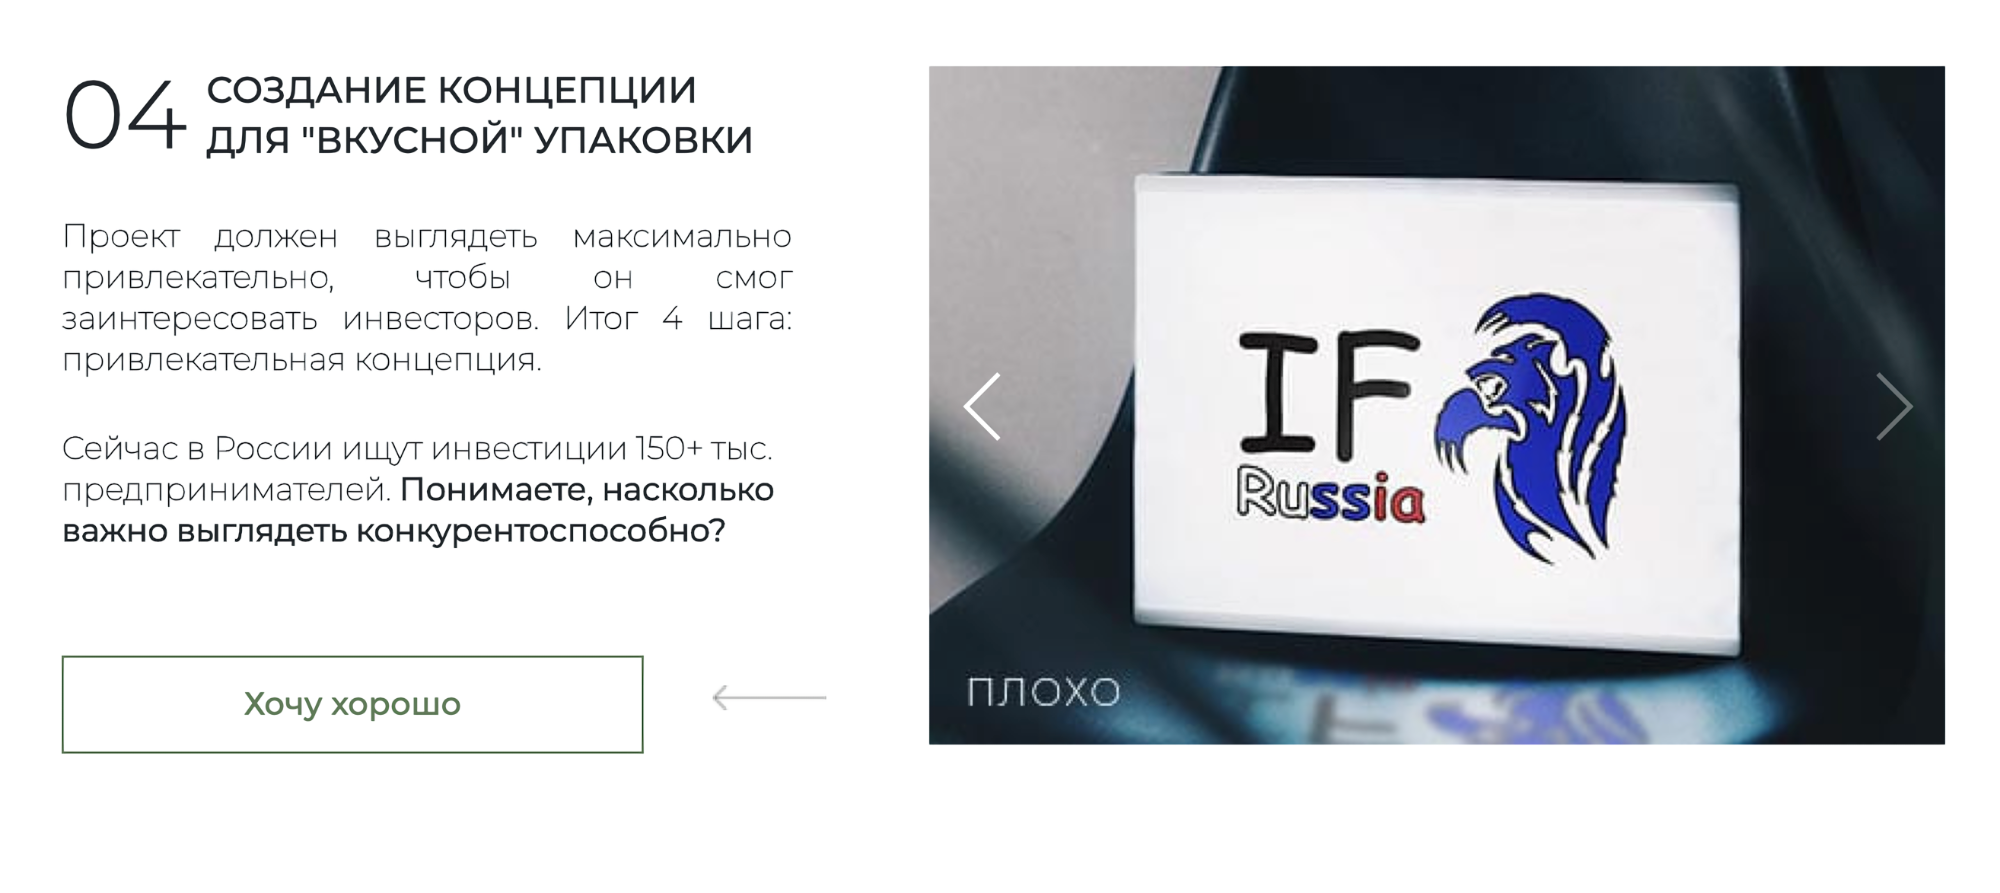 I. F. Russia на сайте для привлечения инвестиций обещает «вкусно» упаковать проект, чтобы инвесторы были максимально заинтересованы